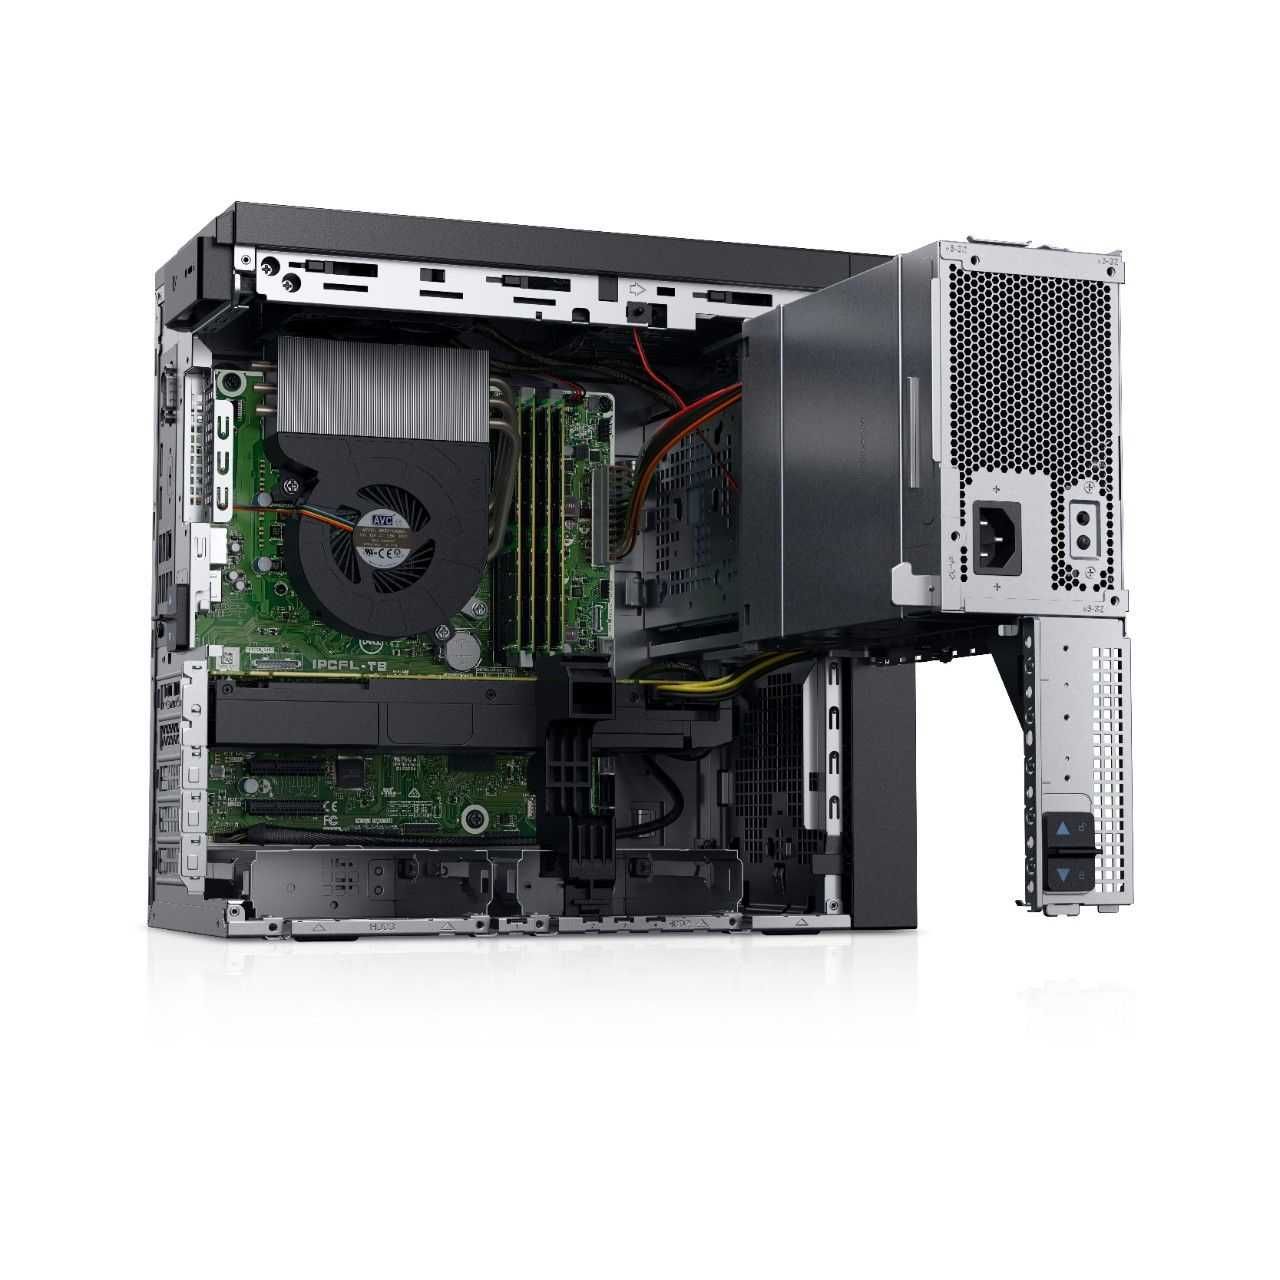 Сервер Dell PowerEdge T40 оптом и в розницу.